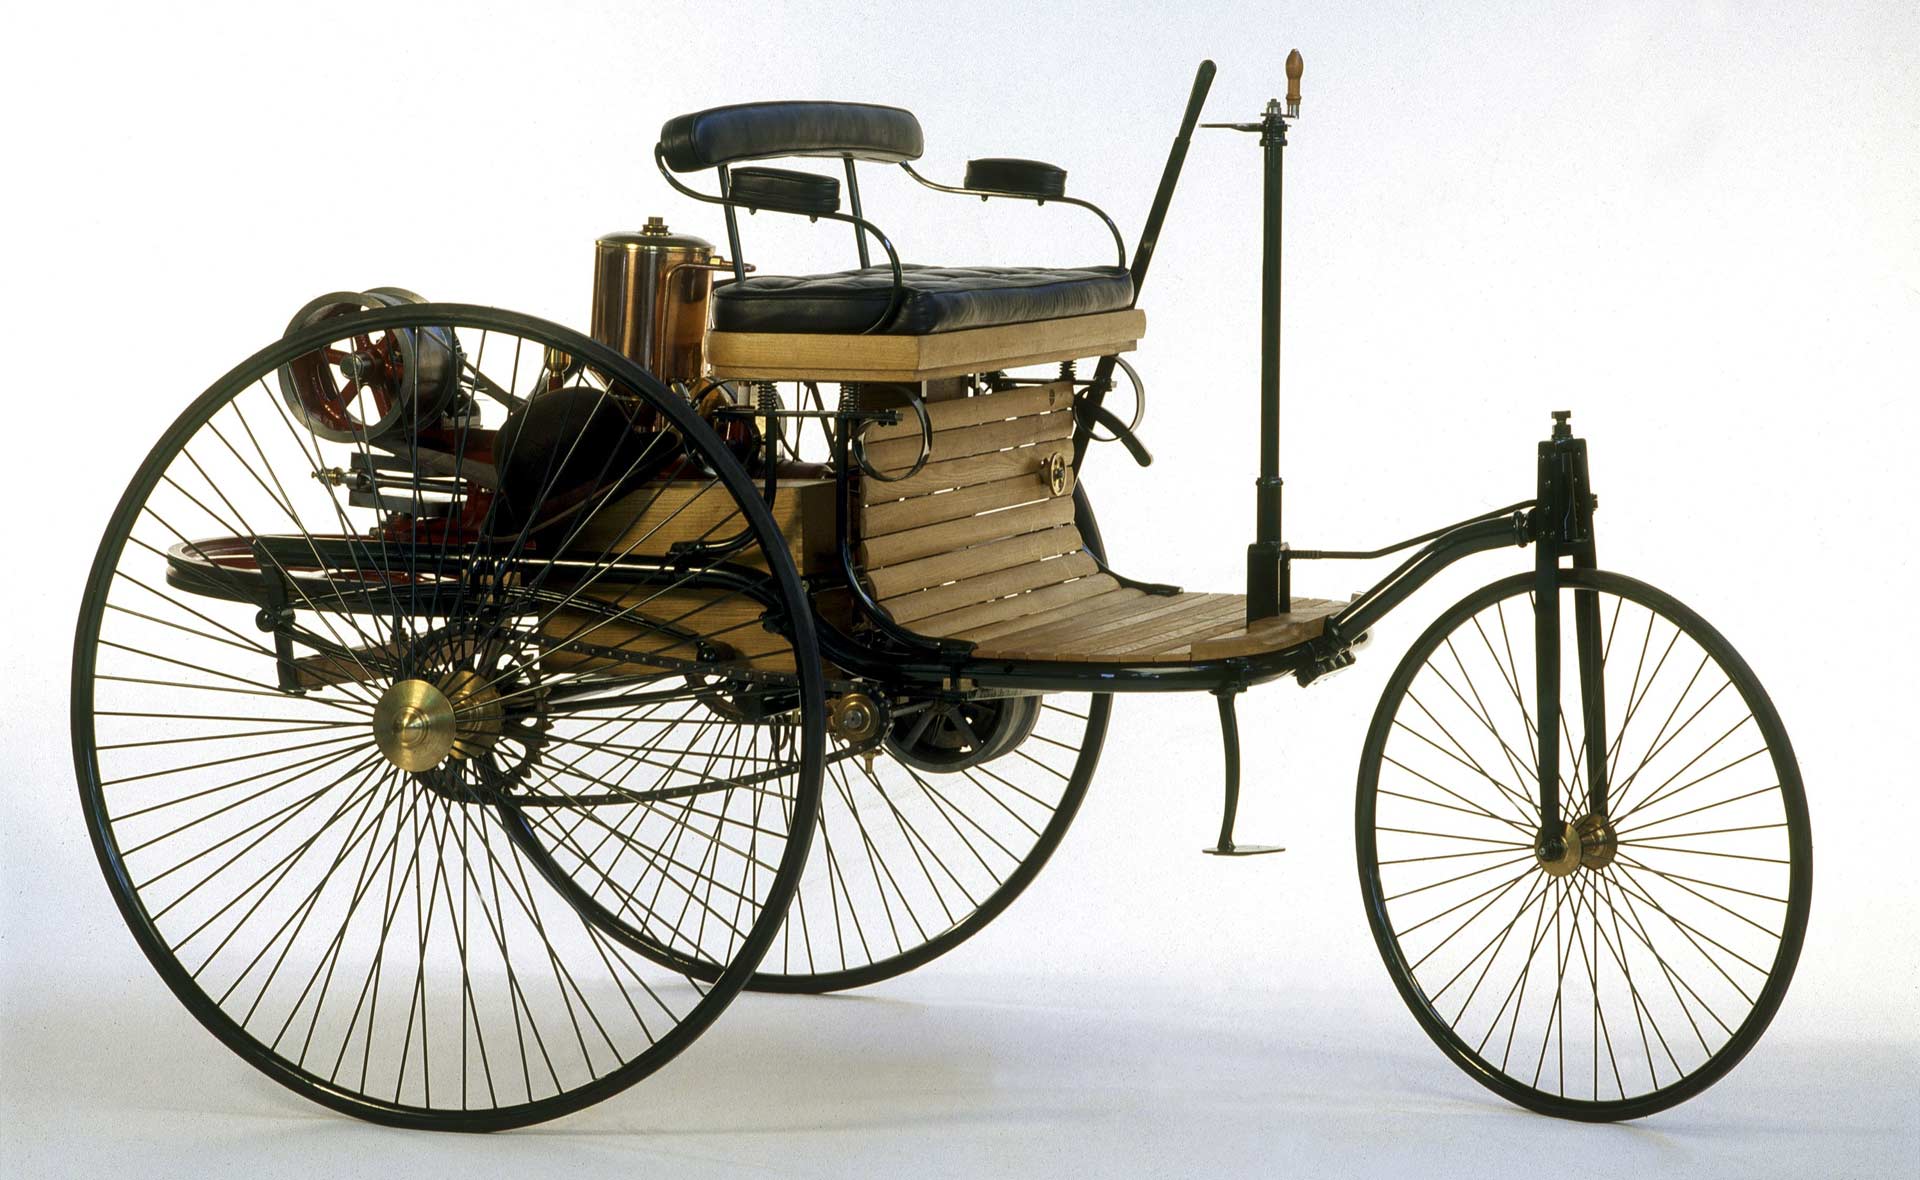 Benz-Patent-Motorwagen-replica